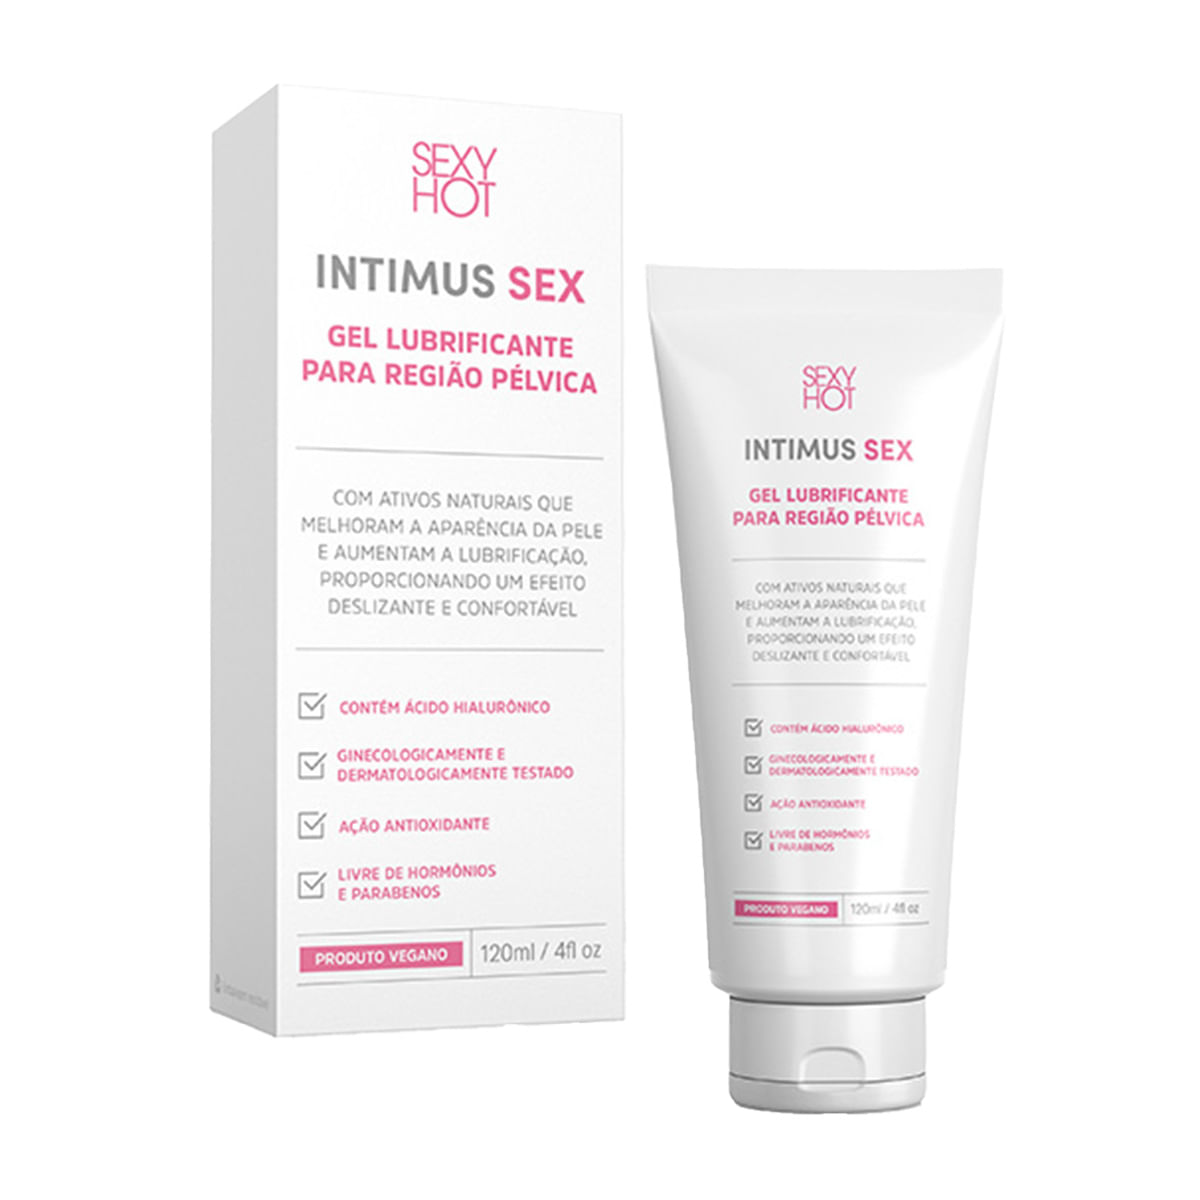 Intimus Sex Gel Lubrificante para Região Pélvica 120ml Sexy Hot